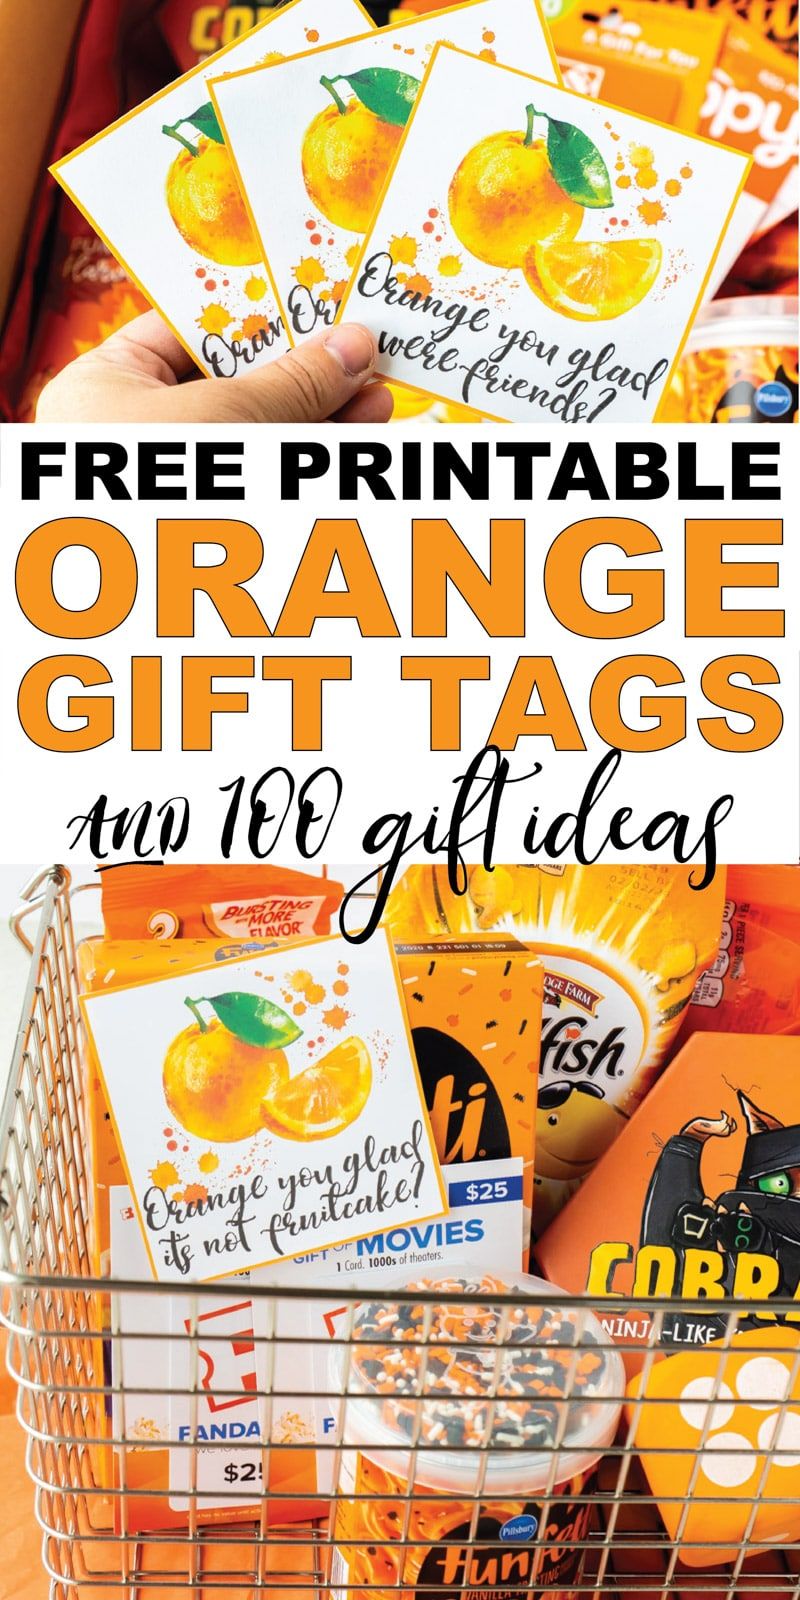 Tyto oranžové štítky na dárky, které jste rádi, jsou tak roztomilé! Přidejte je k některým z oranžových nápadů na dárky pro jeden z nejlepších DIY poděkování nebo sváteční dárek! Ideální pro dárky od sousedů, dárky pro učitele nebo dokonce dárek k narozeninám pro přítele!